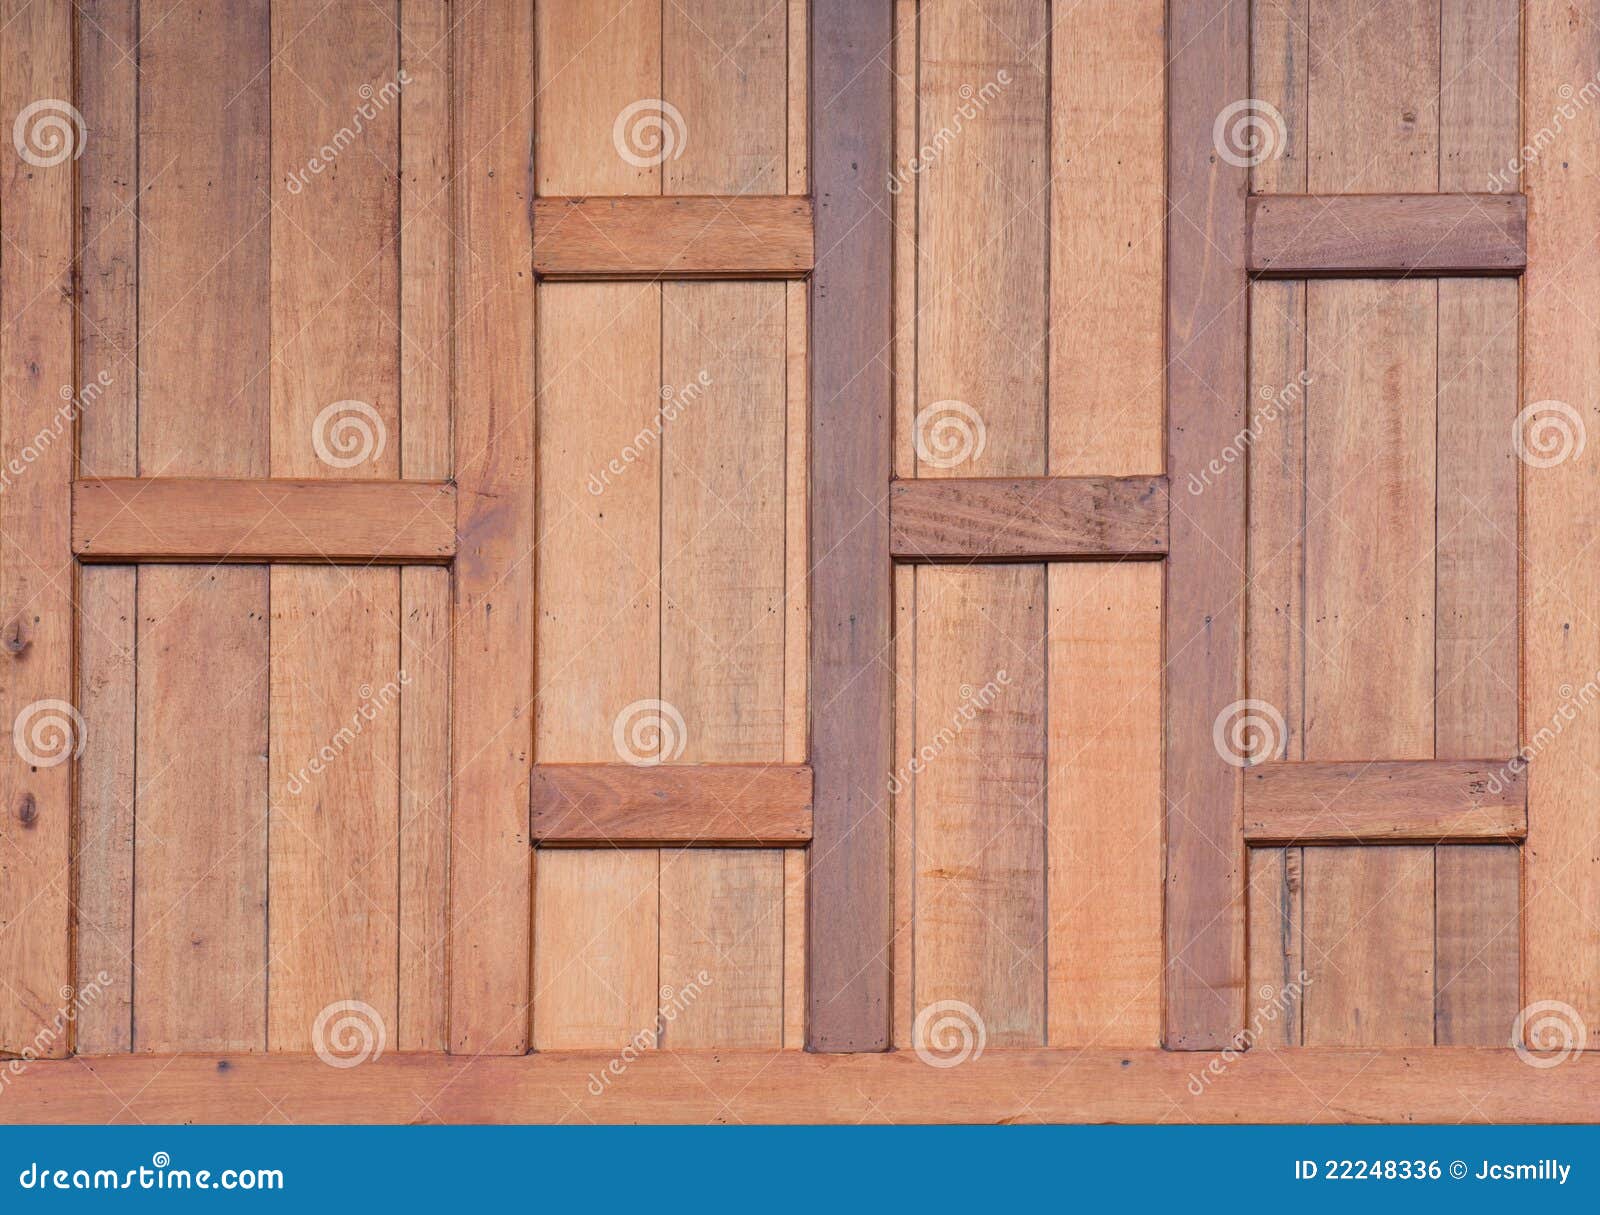 Teak Wood Wall Background Royalty Free Stock Image  Image 